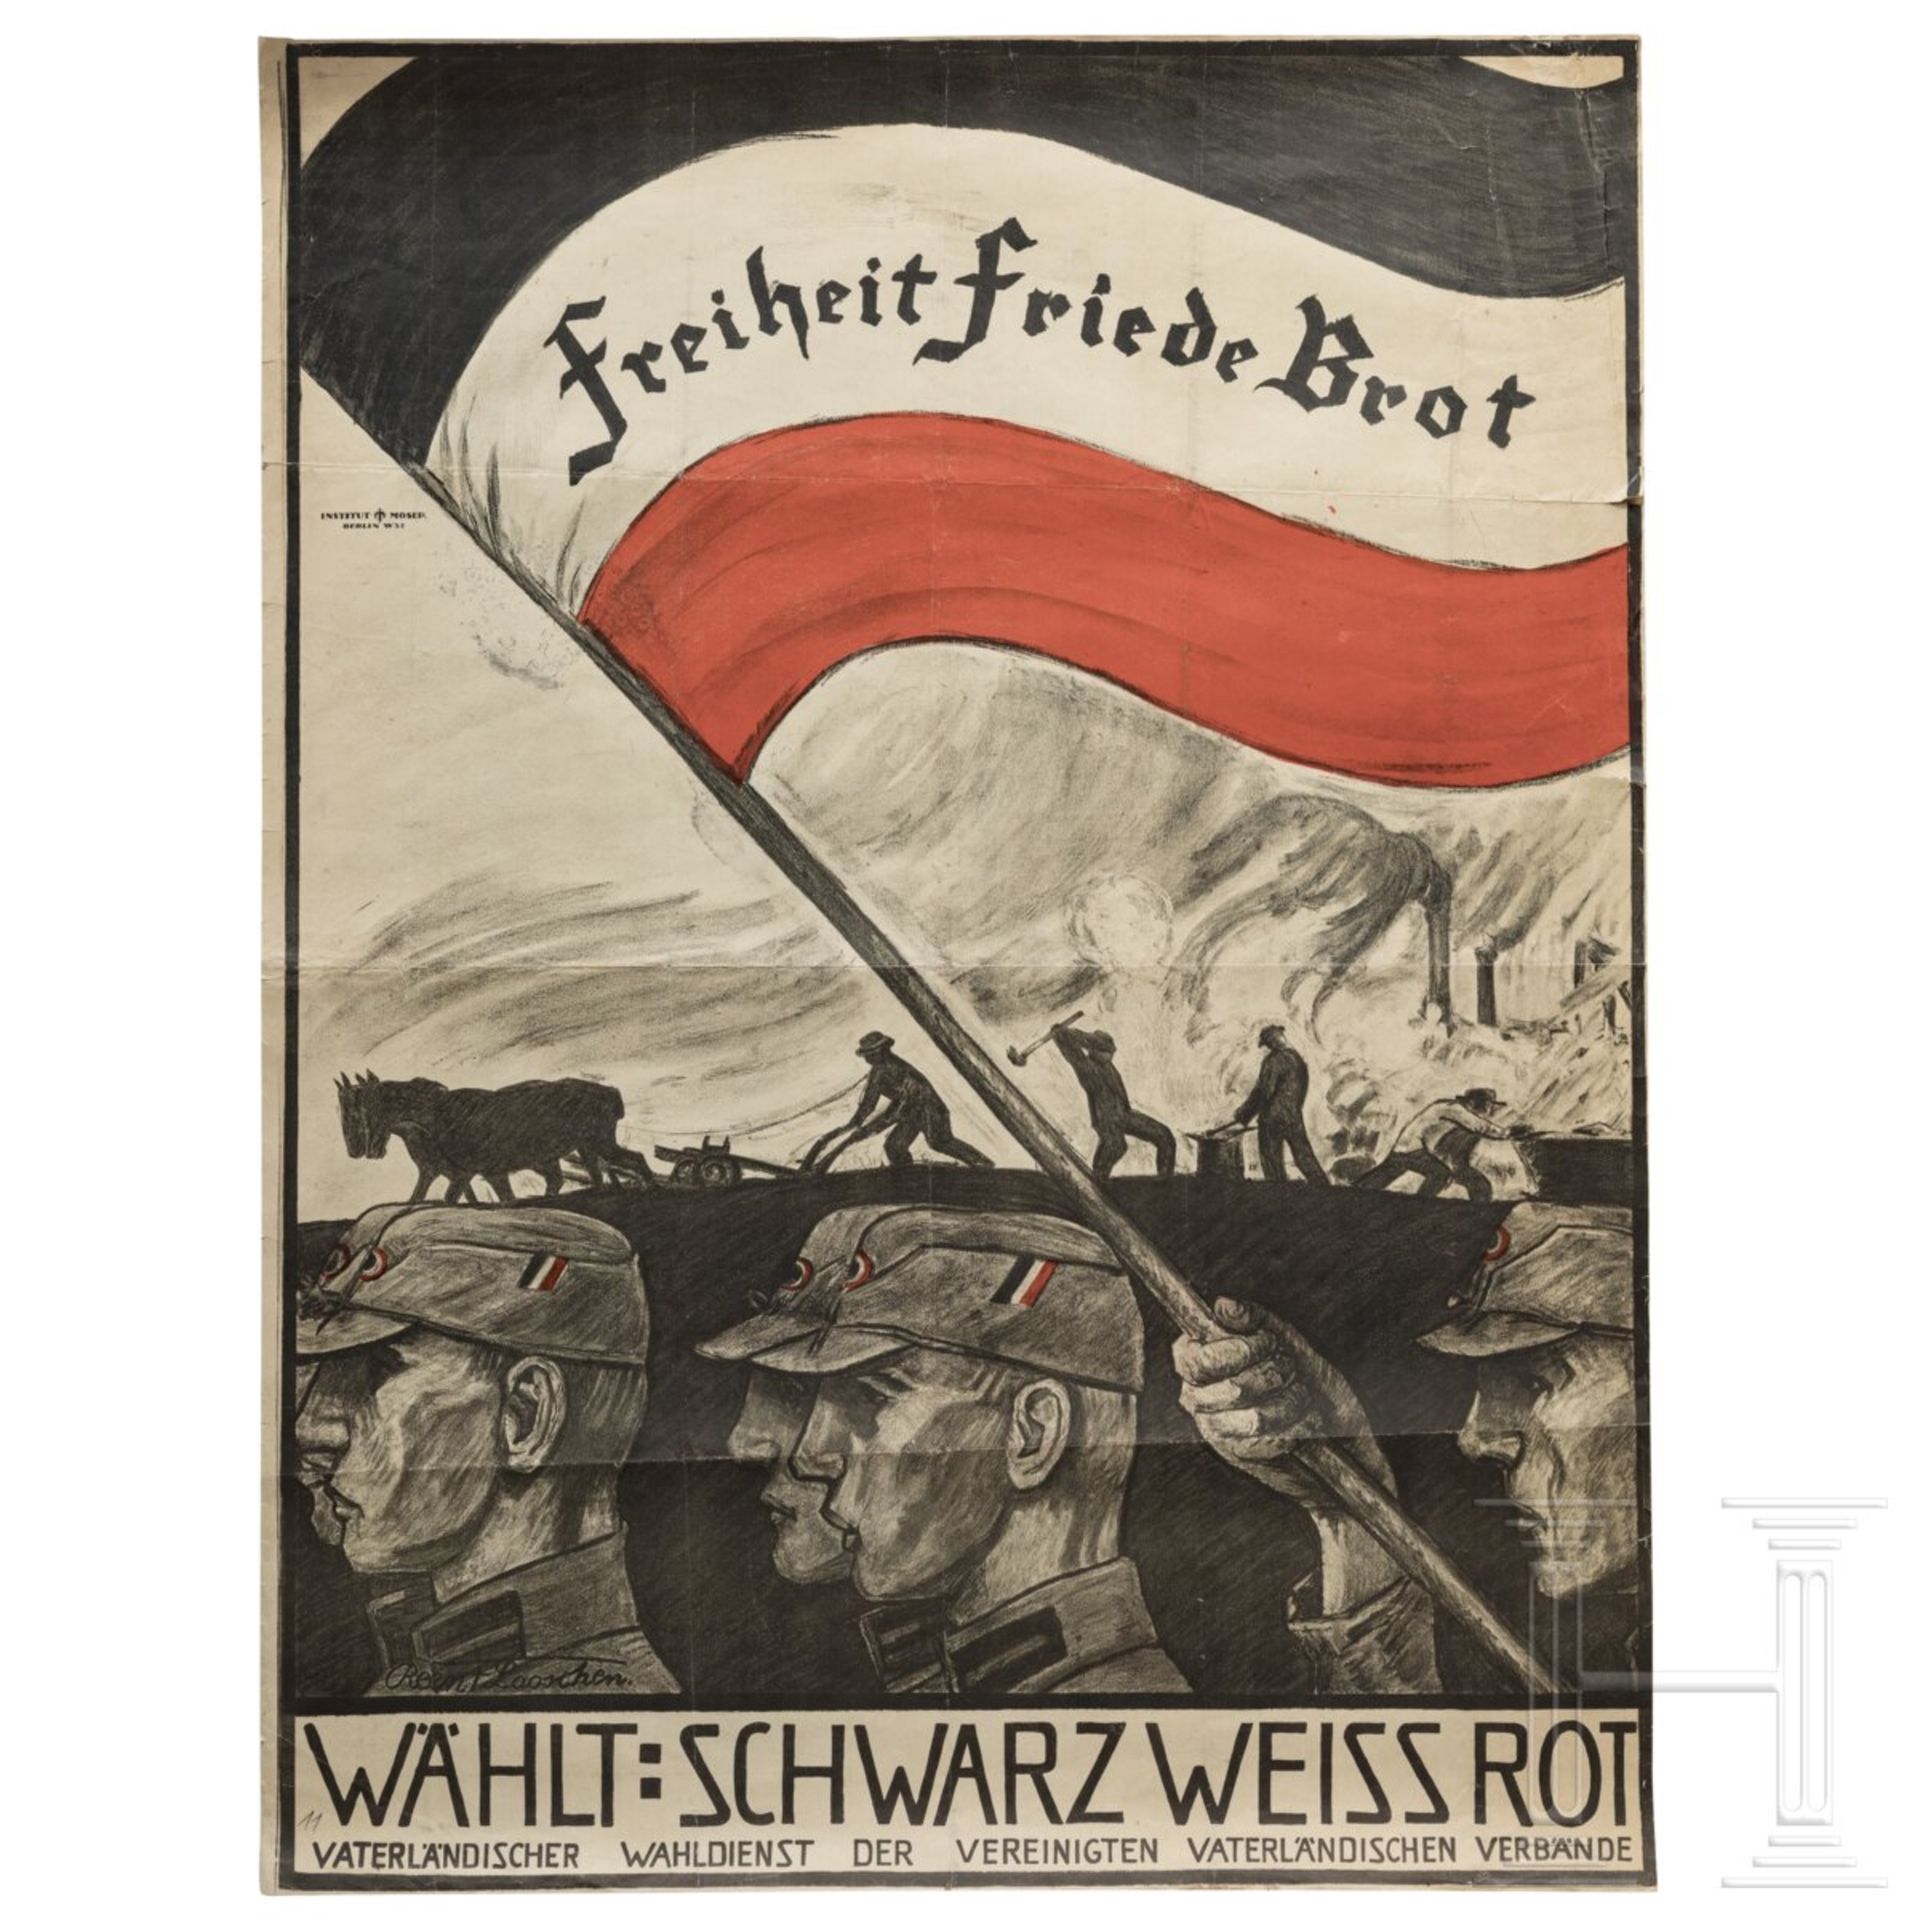 Wahlplakat der Vereinigten Vaterländischen Verbände Deutschlands "Freiheit - Friede - Brot", Reent L